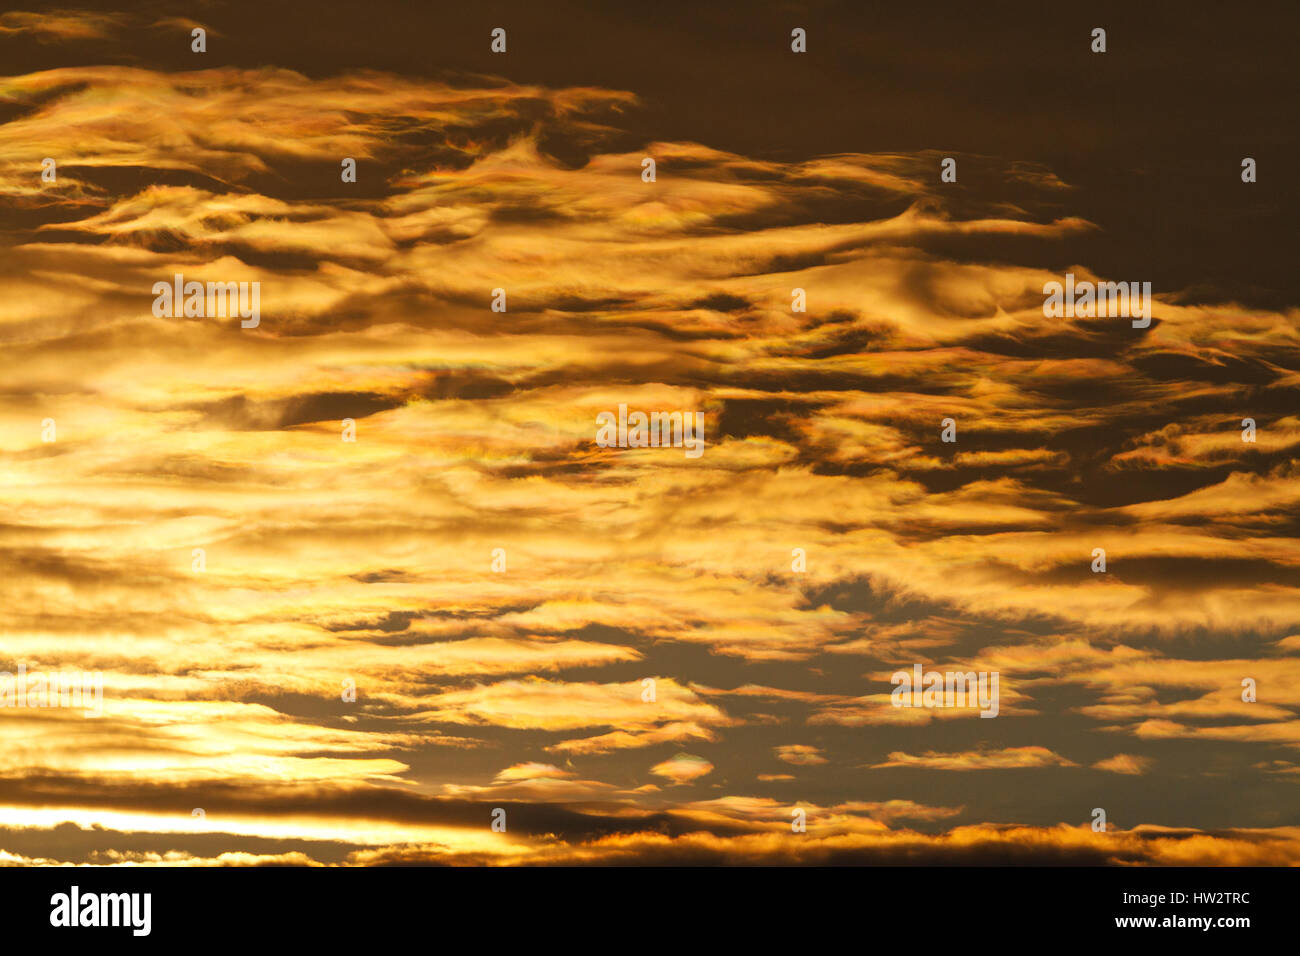 Lever du soleil avec de beaux nuages rares,matin, arc-en-ciel de printemps Banque D'Images